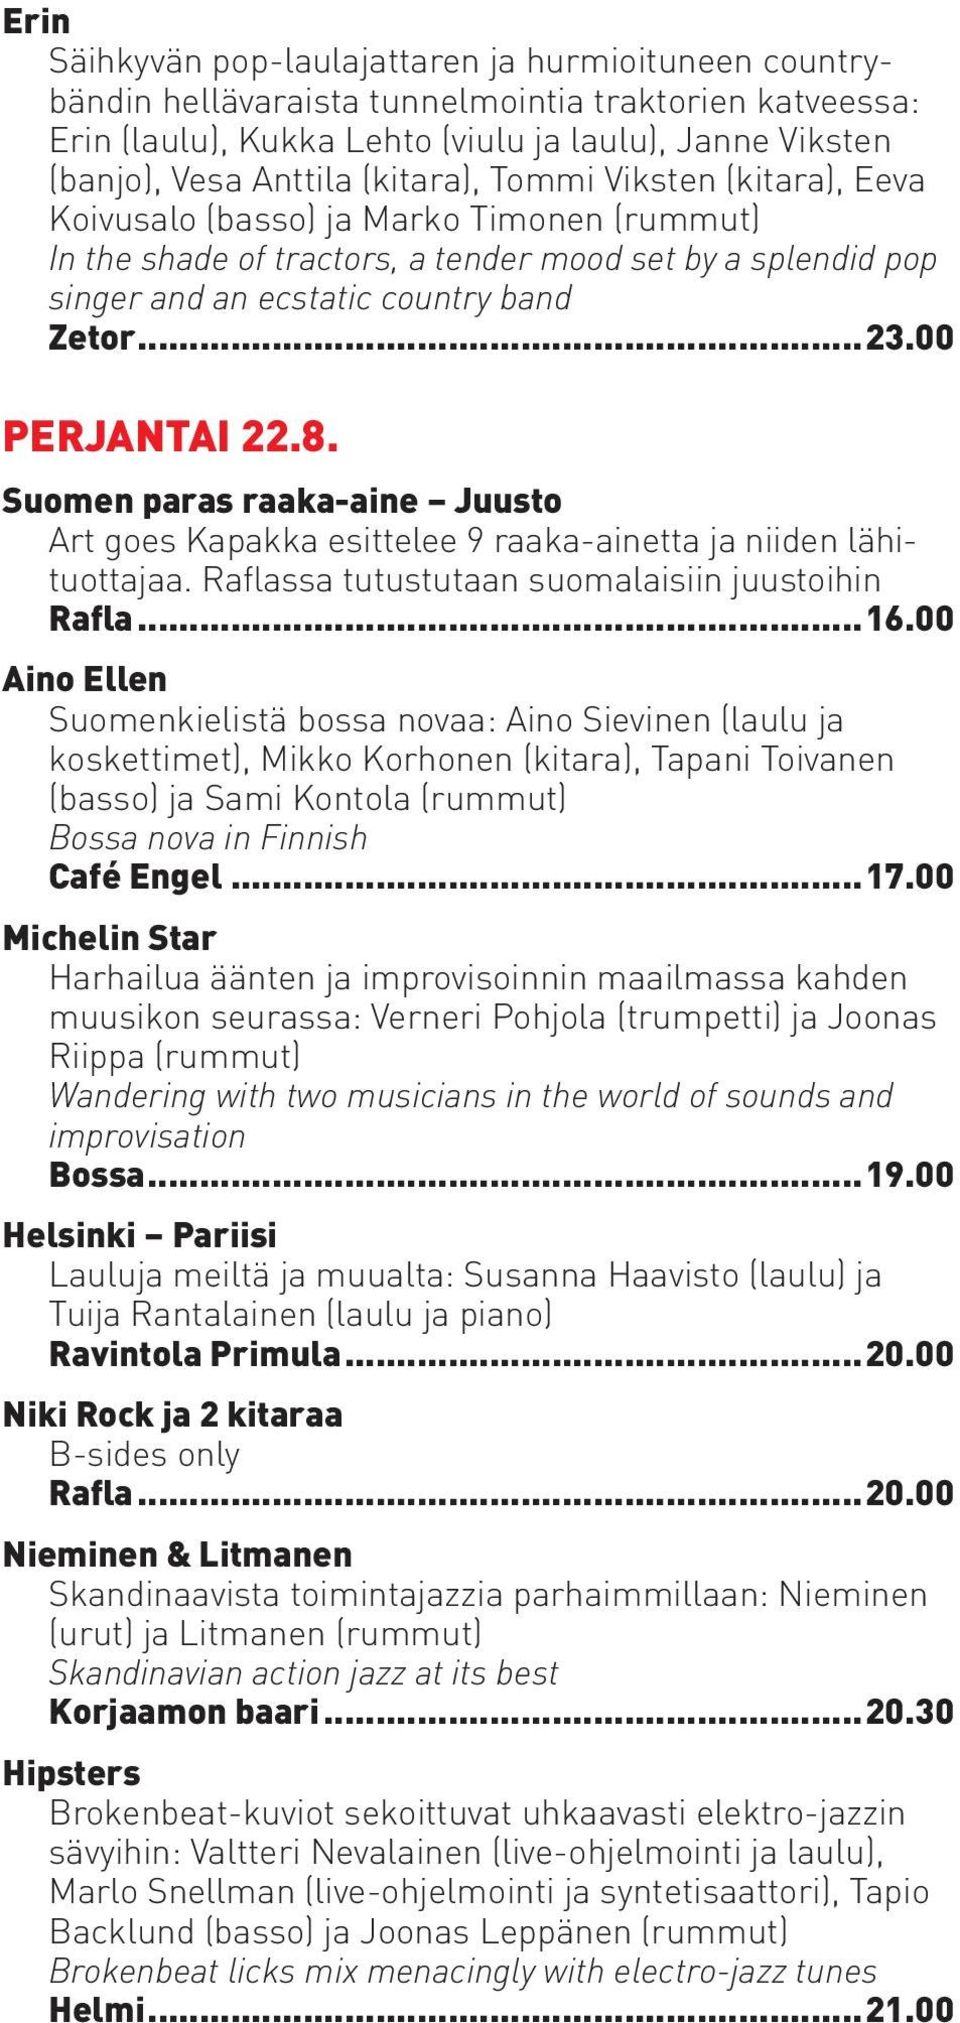 00 PERJANTAI 22.8. Suomen paras raaka-aine Juusto Art goes Kapakka esittelee 9 raaka-ainetta ja niiden lähituottajaa. Raflassa tutustutaan suomalaisiin juustoihin Rafla...16.